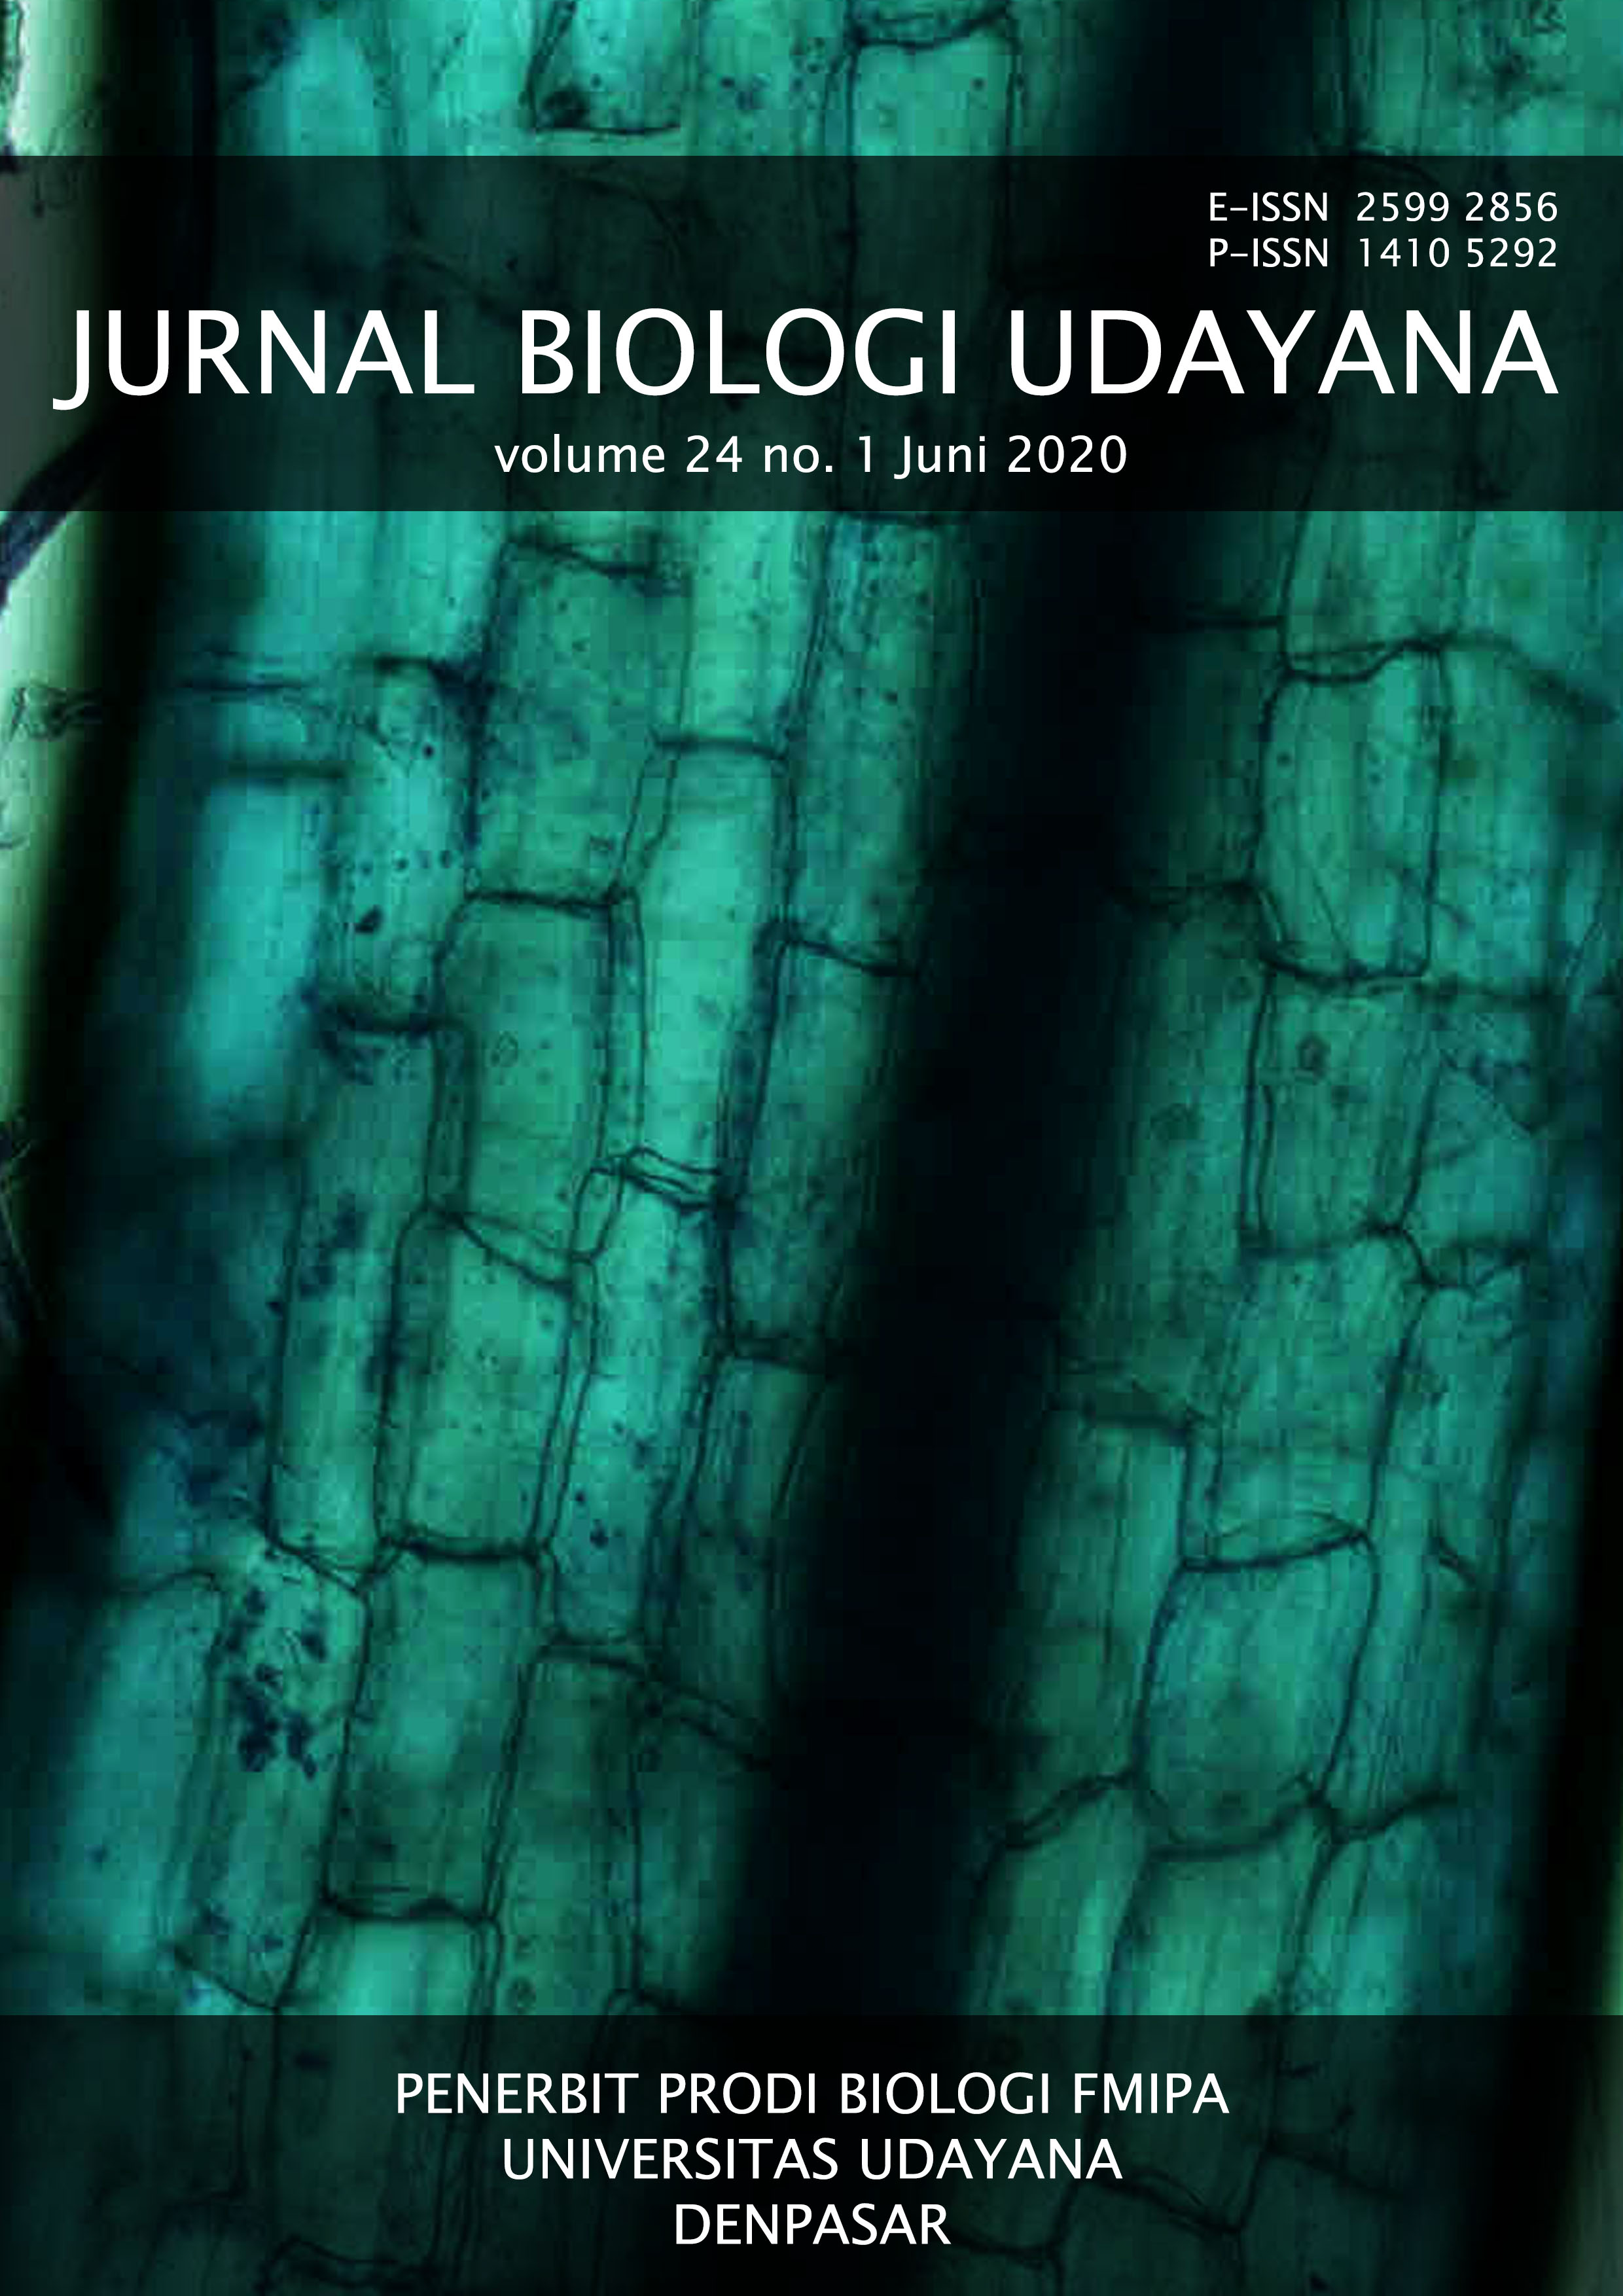 Cover dan Daftar Isi | Jurnal Biologi Udayana